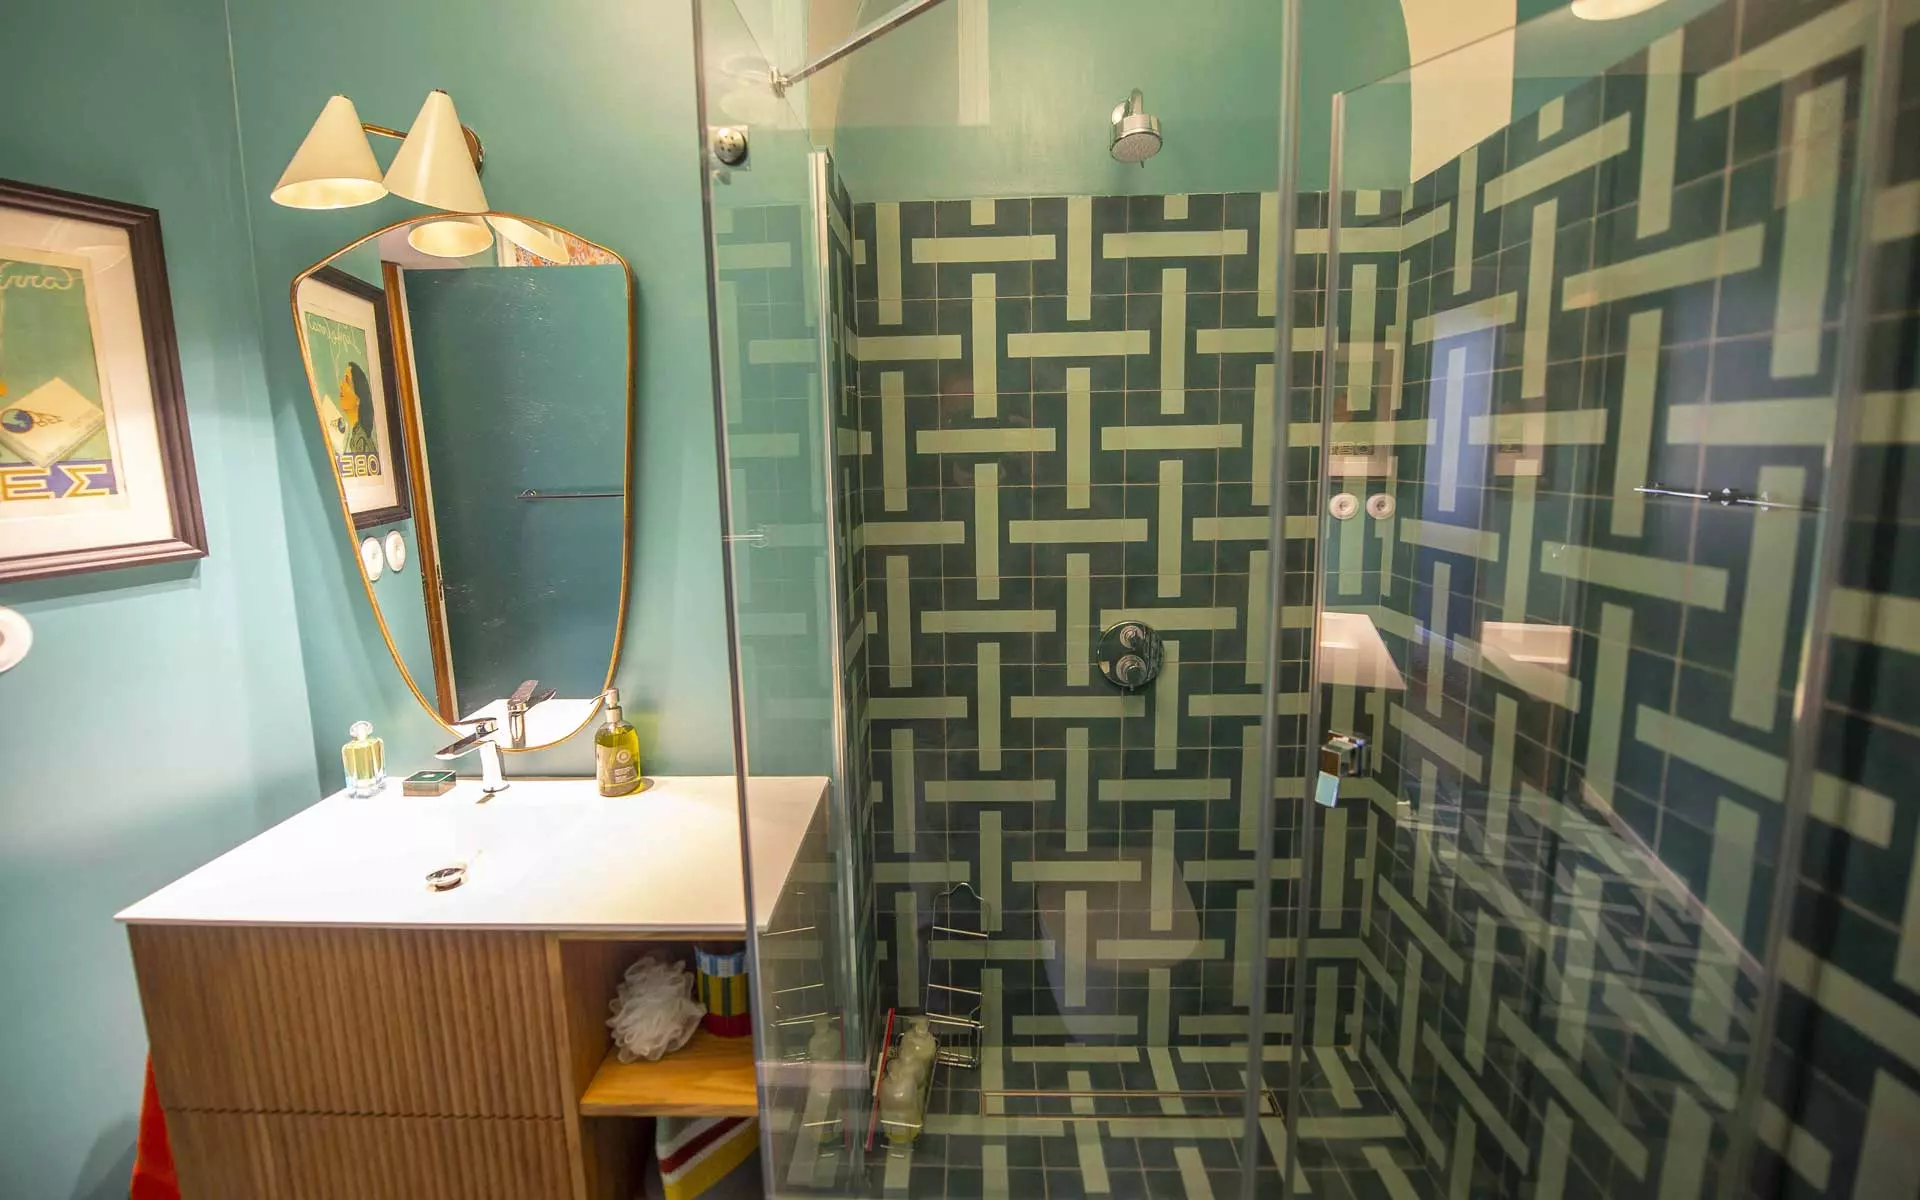 Baño con baldosas de ducha en verde oscuro y paredes en verde menta